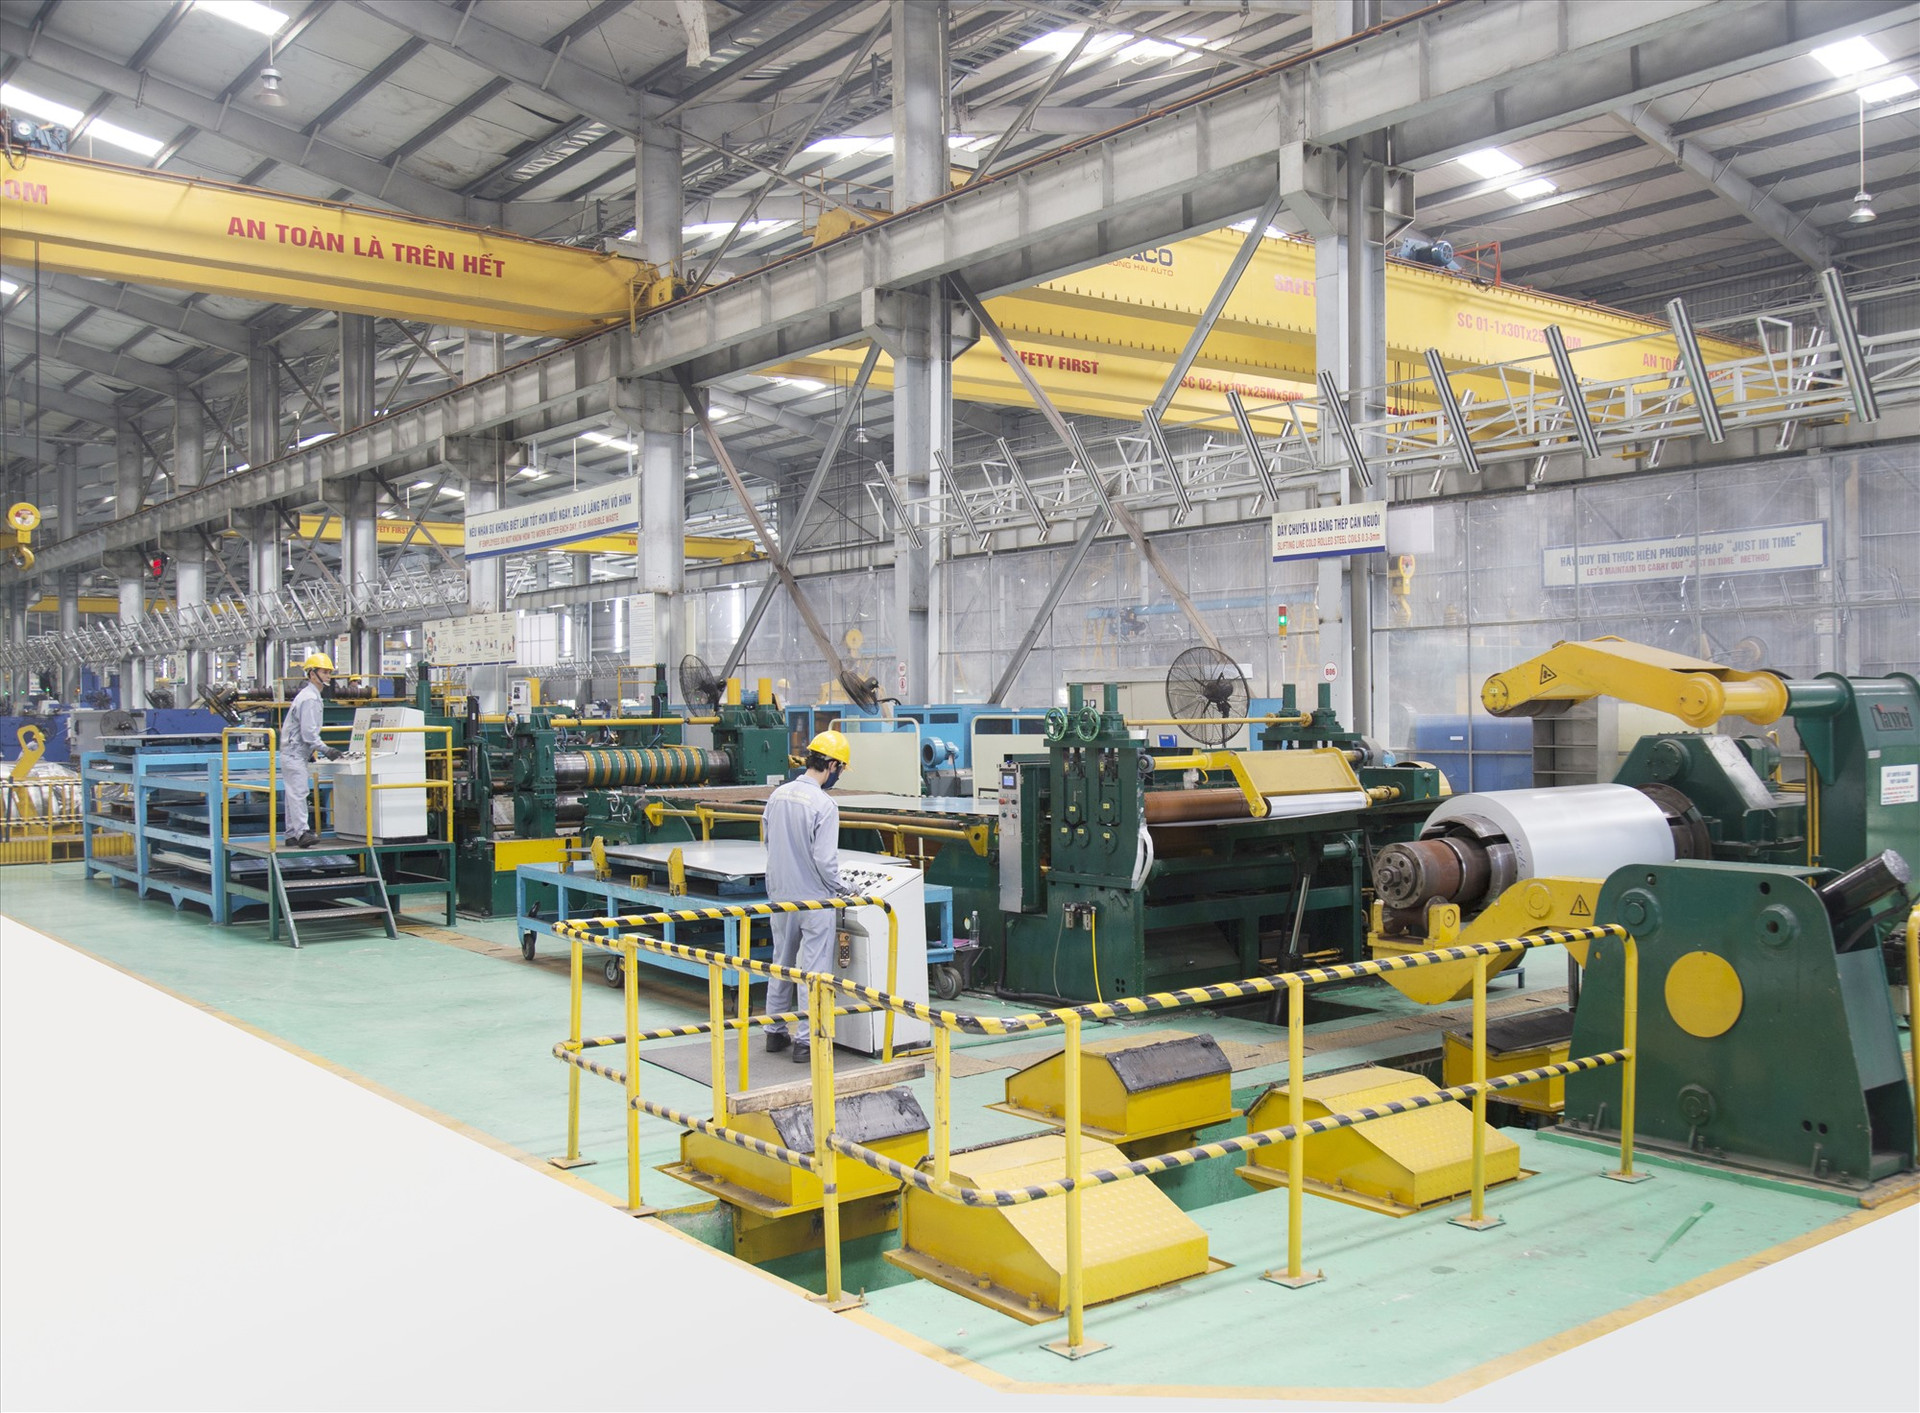 Trung tâm cơ khí đa dụng và các sản phẩm cơ khí và công nghiệp hỗ trợ sản xuất tại Chu Lai. Ảnh: T.D